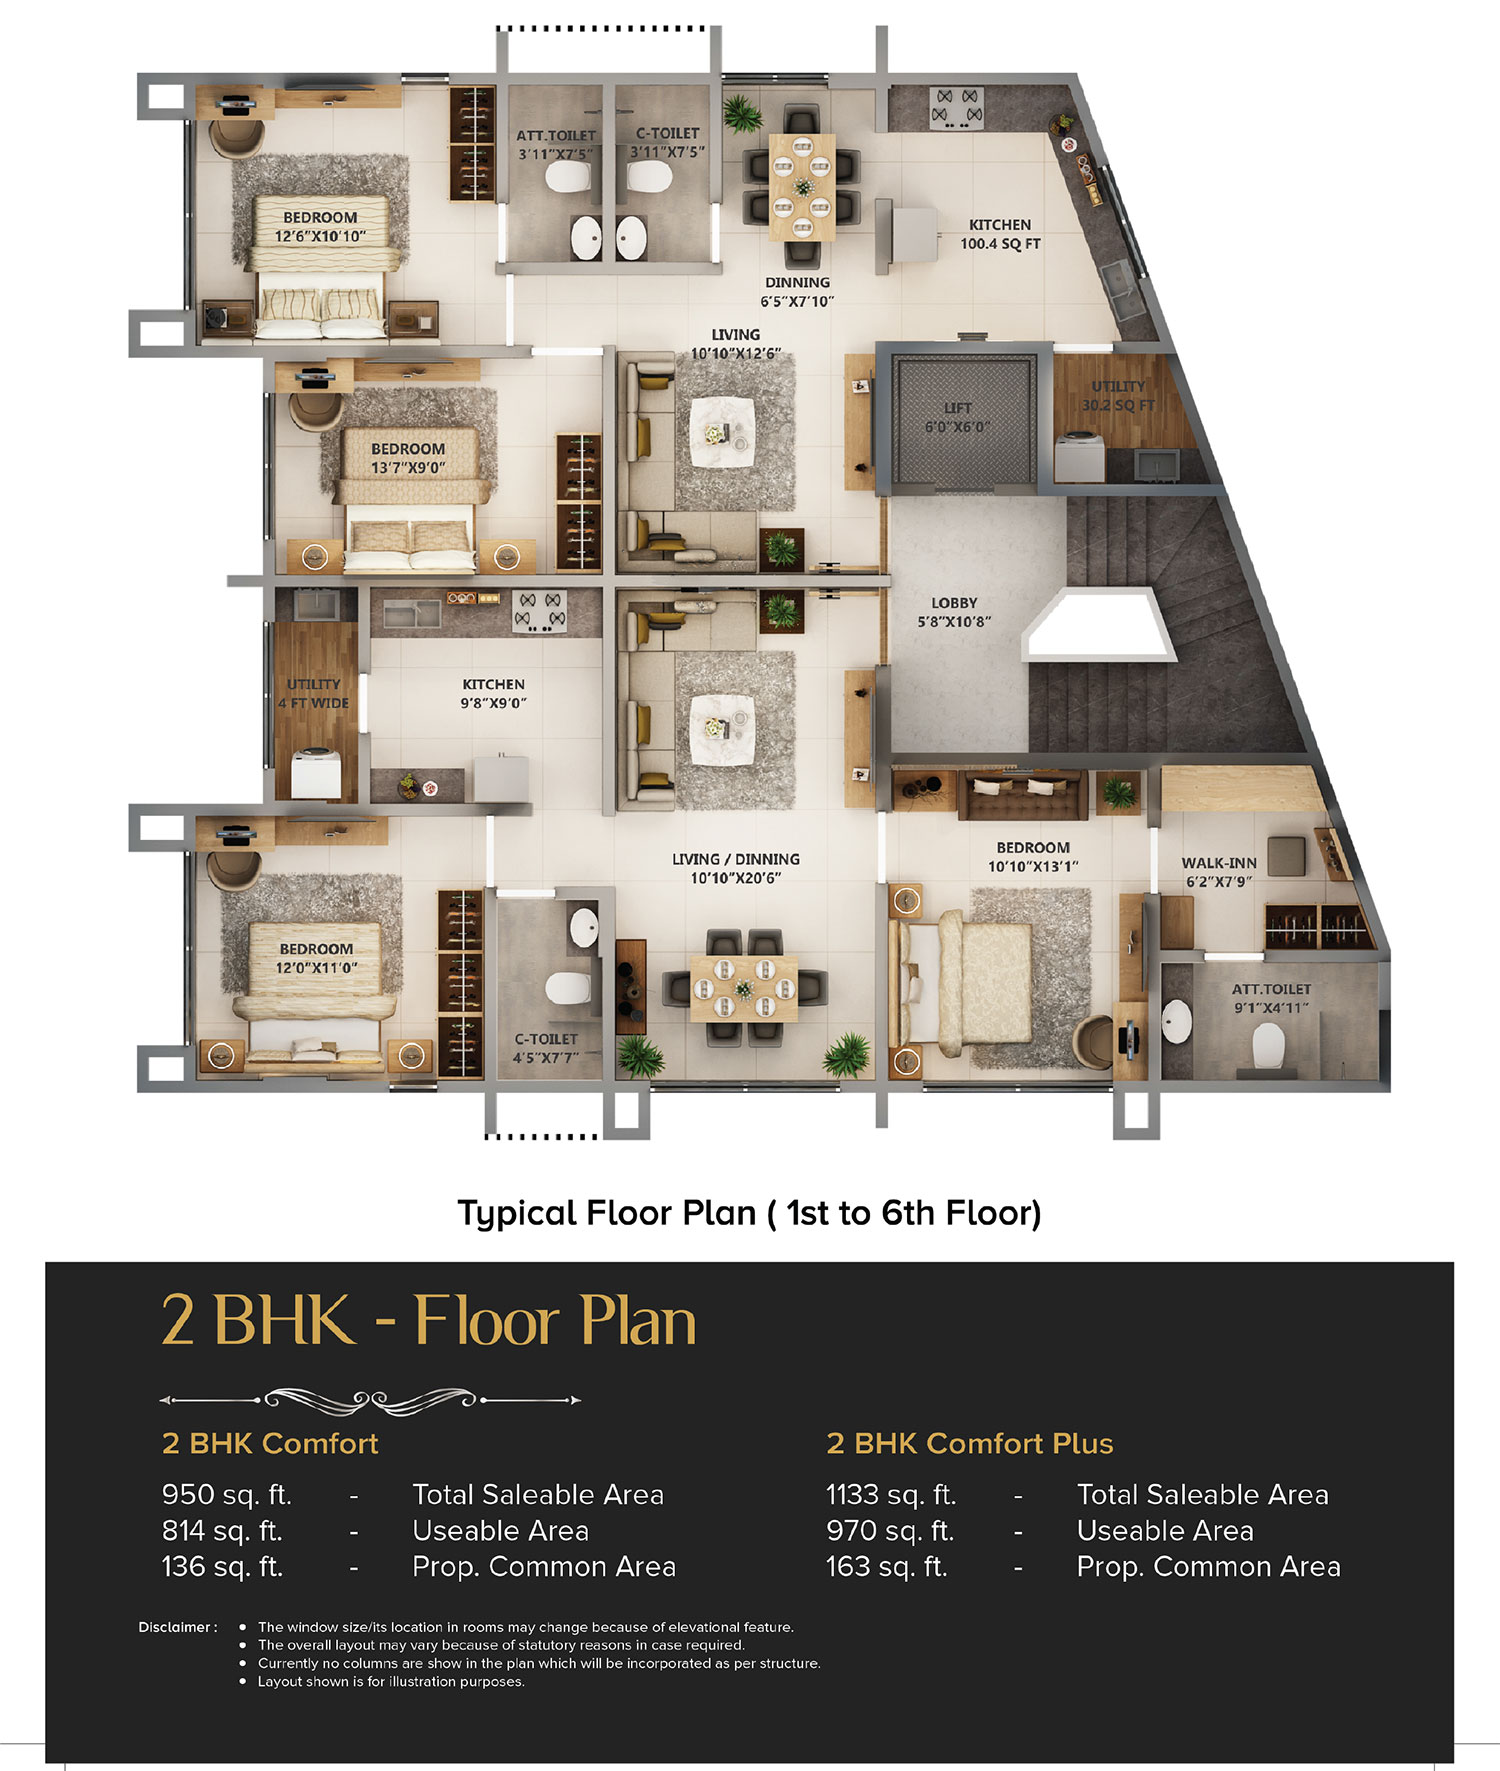 Typical Floor Plan 1 to 6 Floor